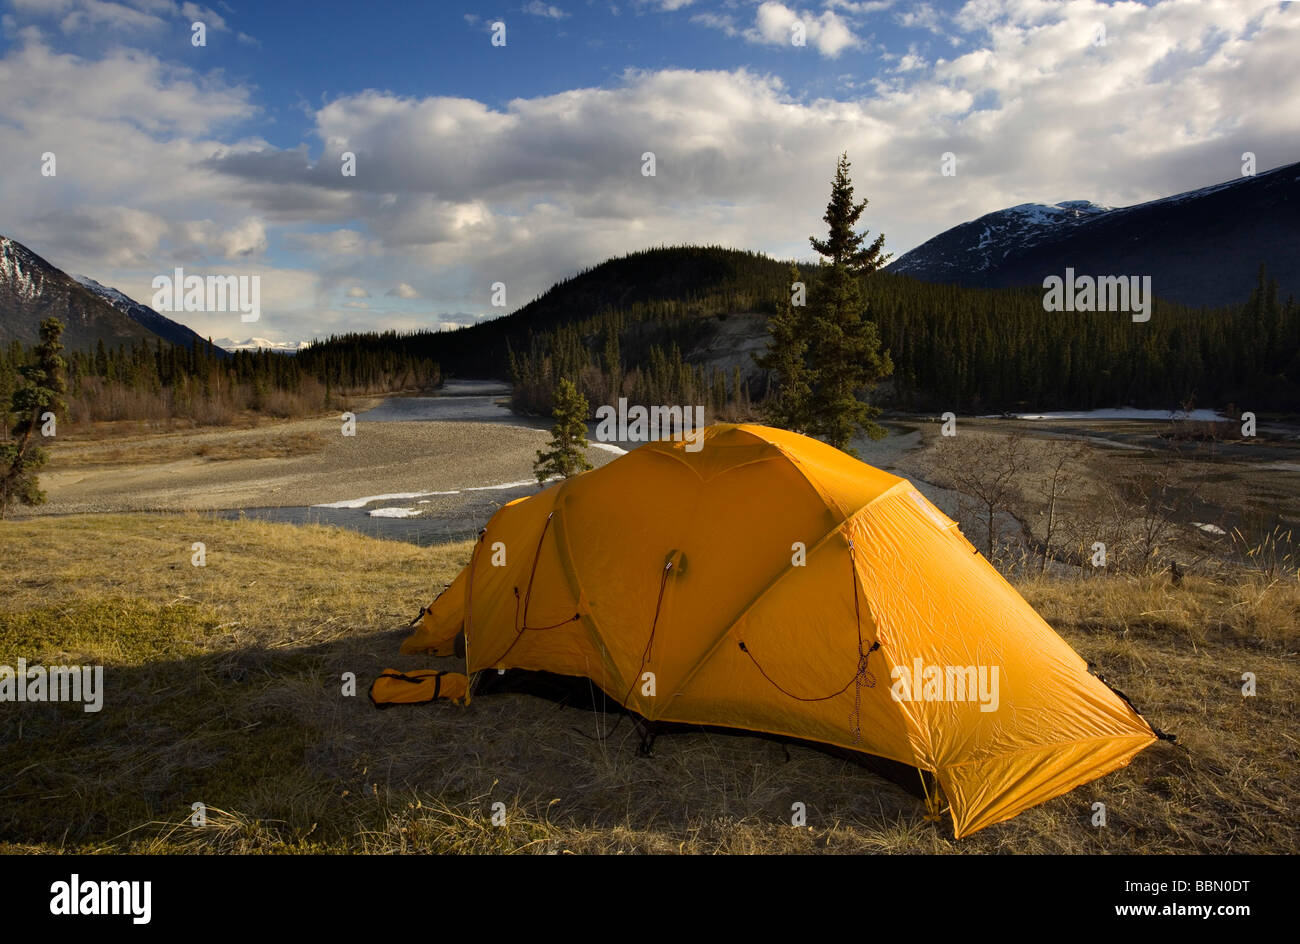 Carpa amarilla en la orilla de un río, camping, Río Takhini detrás, Territorio de Yukon, Canadá, Norteamérica Foto de stock